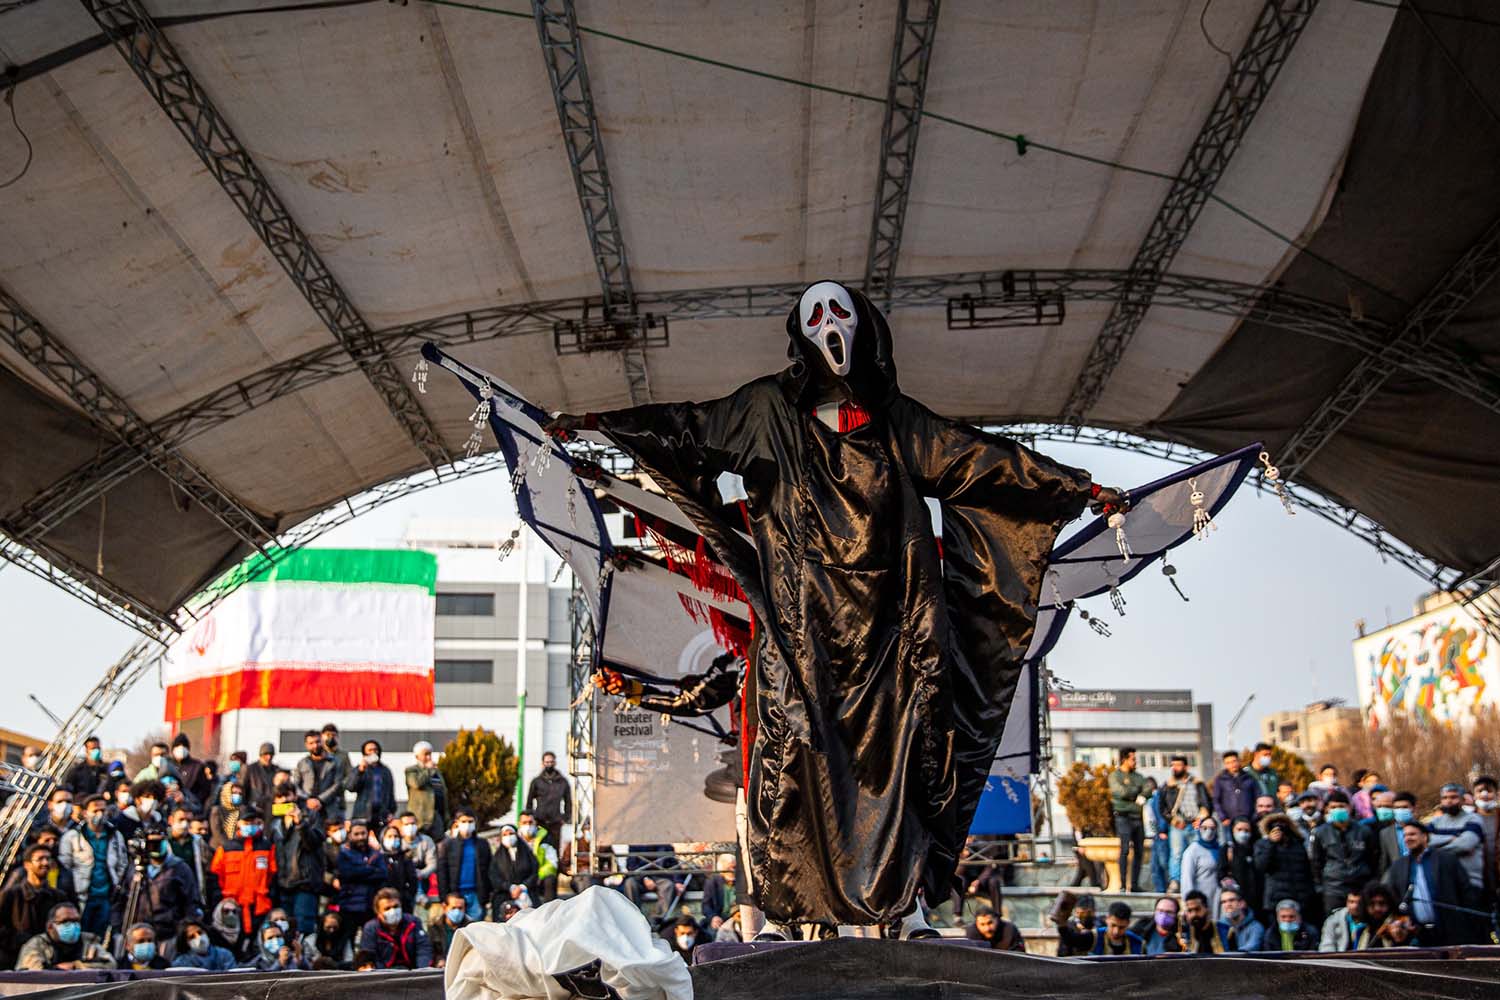 نگاهی به نمایش«روده درازی های یک مرده بی صاحب» به کارگردانی هادی کیانی

آمیزش هیجان انگیز نمایش های سنتی ایران با تئاتر مدرن خیابانی